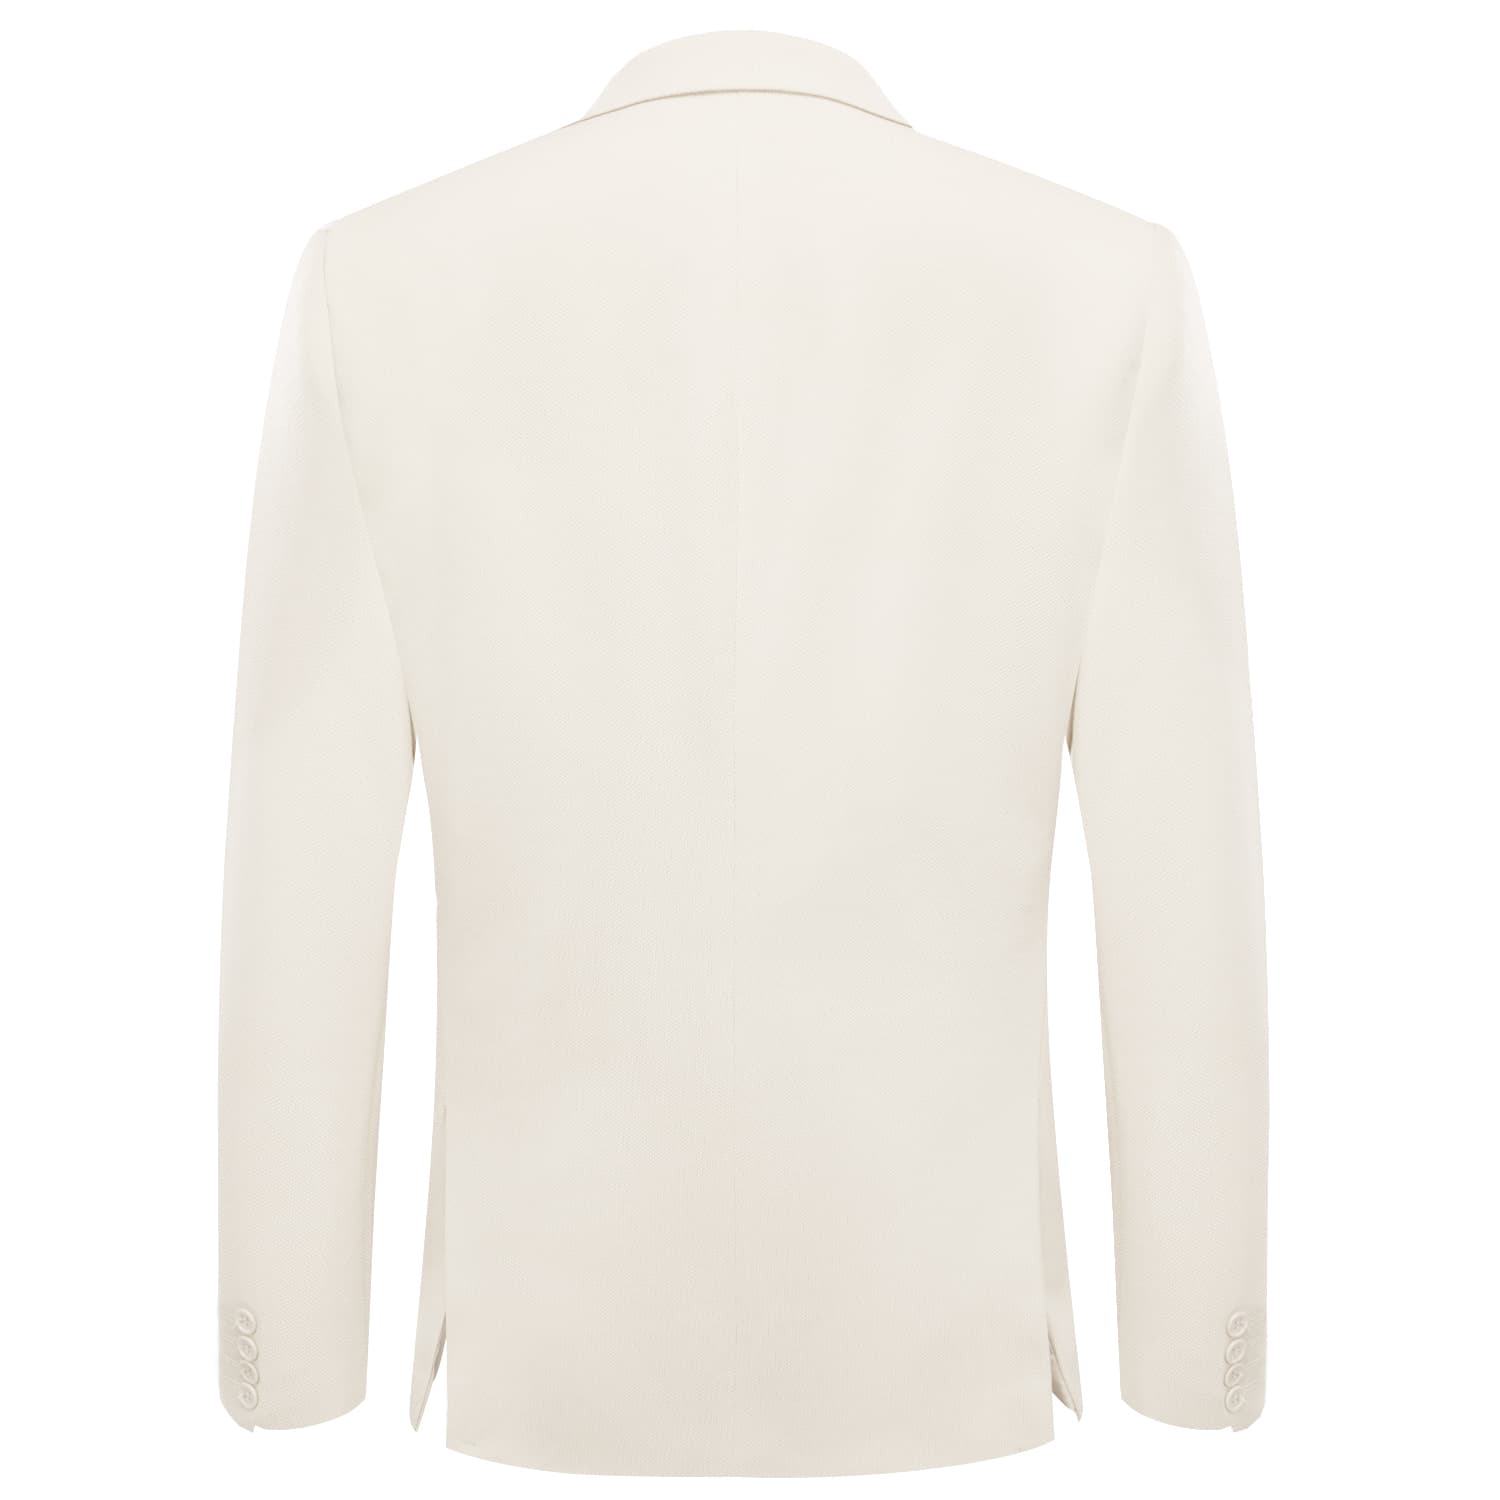 Hi-Tie Business Daily Blazer White Men's Suit Jacket Slim Fit Coat